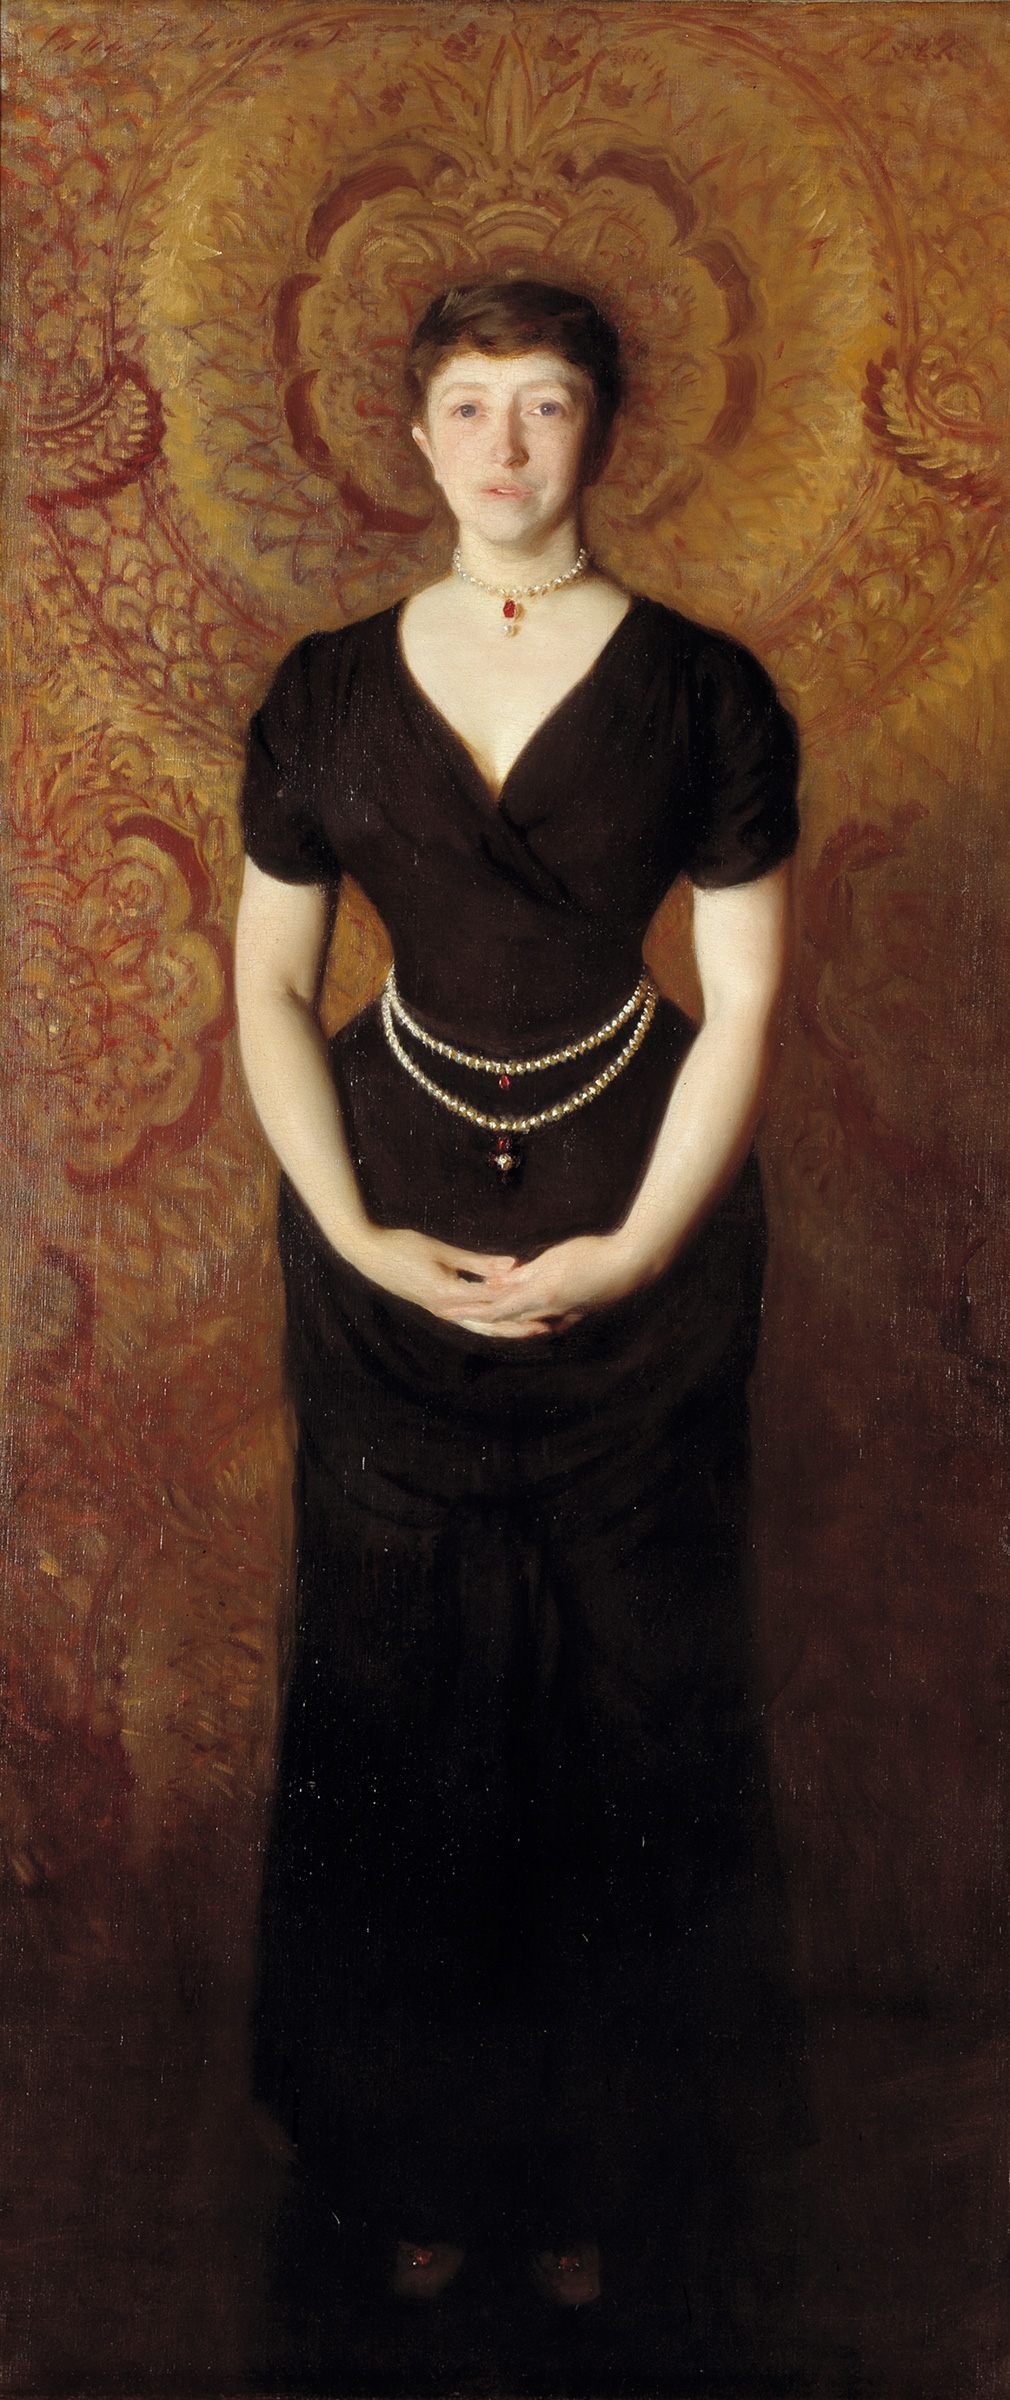 Portret van Isabella Stewart Gardner by John Singer Sargent - 1888 - 190 x 80 cm 